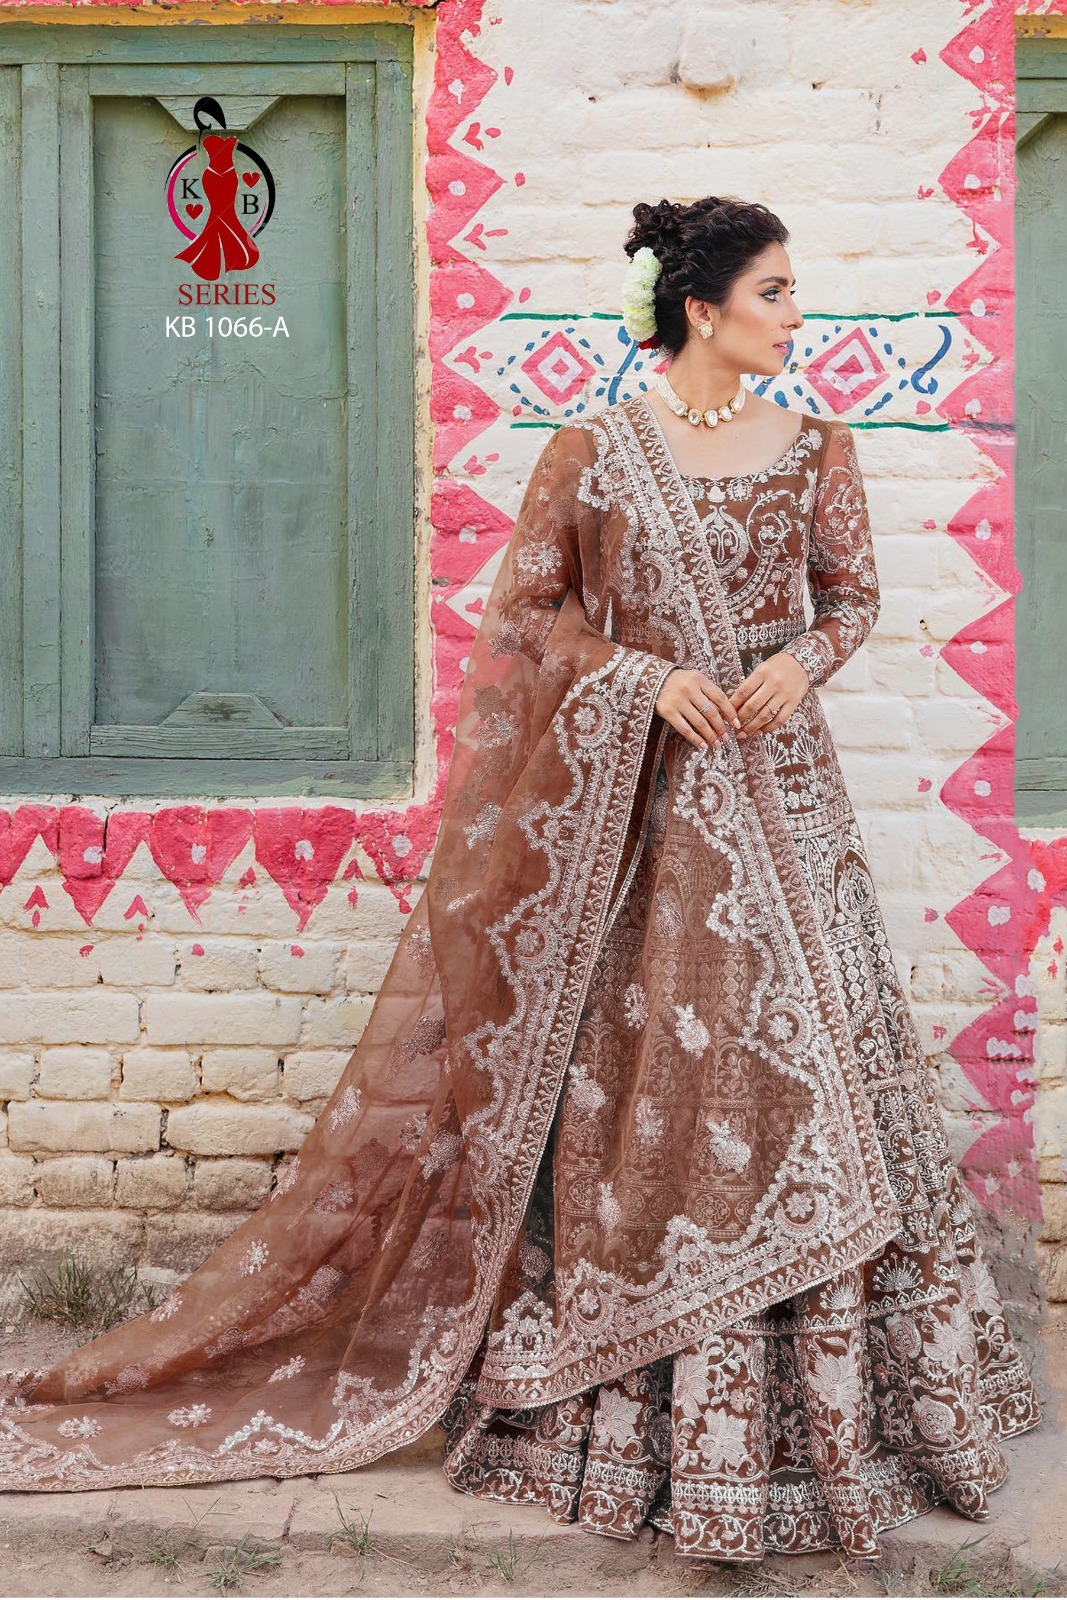 KB 1066 By Senhora Dresses Designer Bridal Anarkali Gown Collection Senhora  Wholesale Gowns Catalog